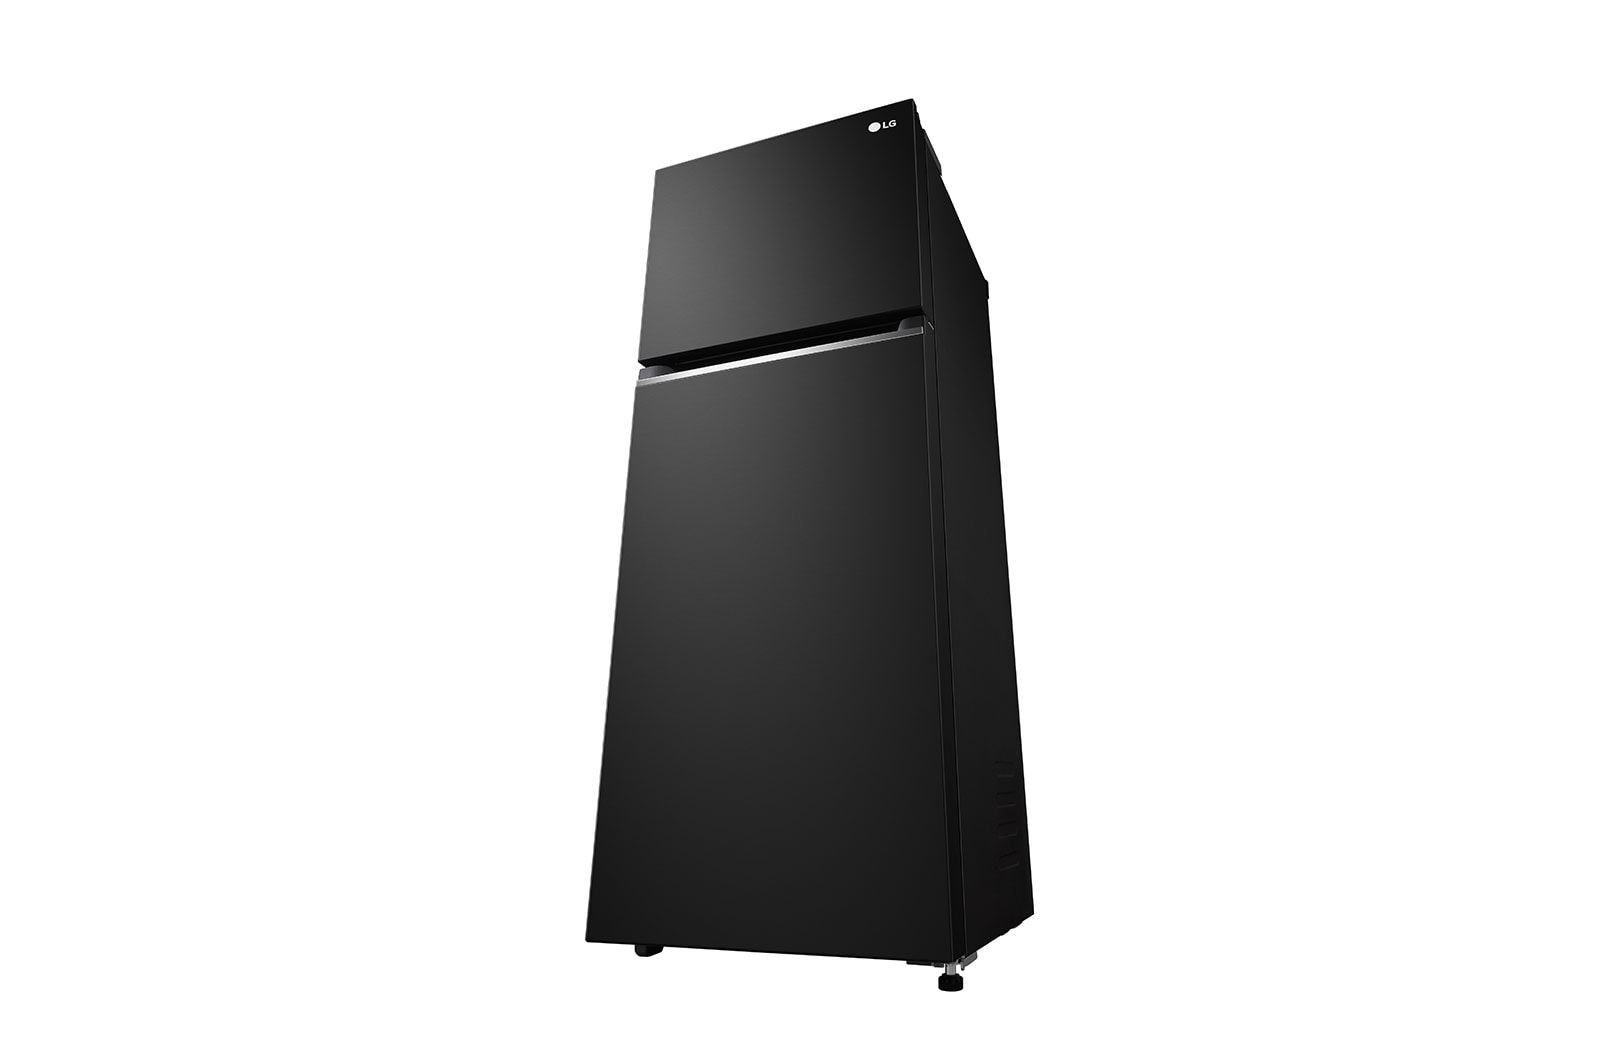 Tủ lạnh LG Inverter 266L GV-B262BL